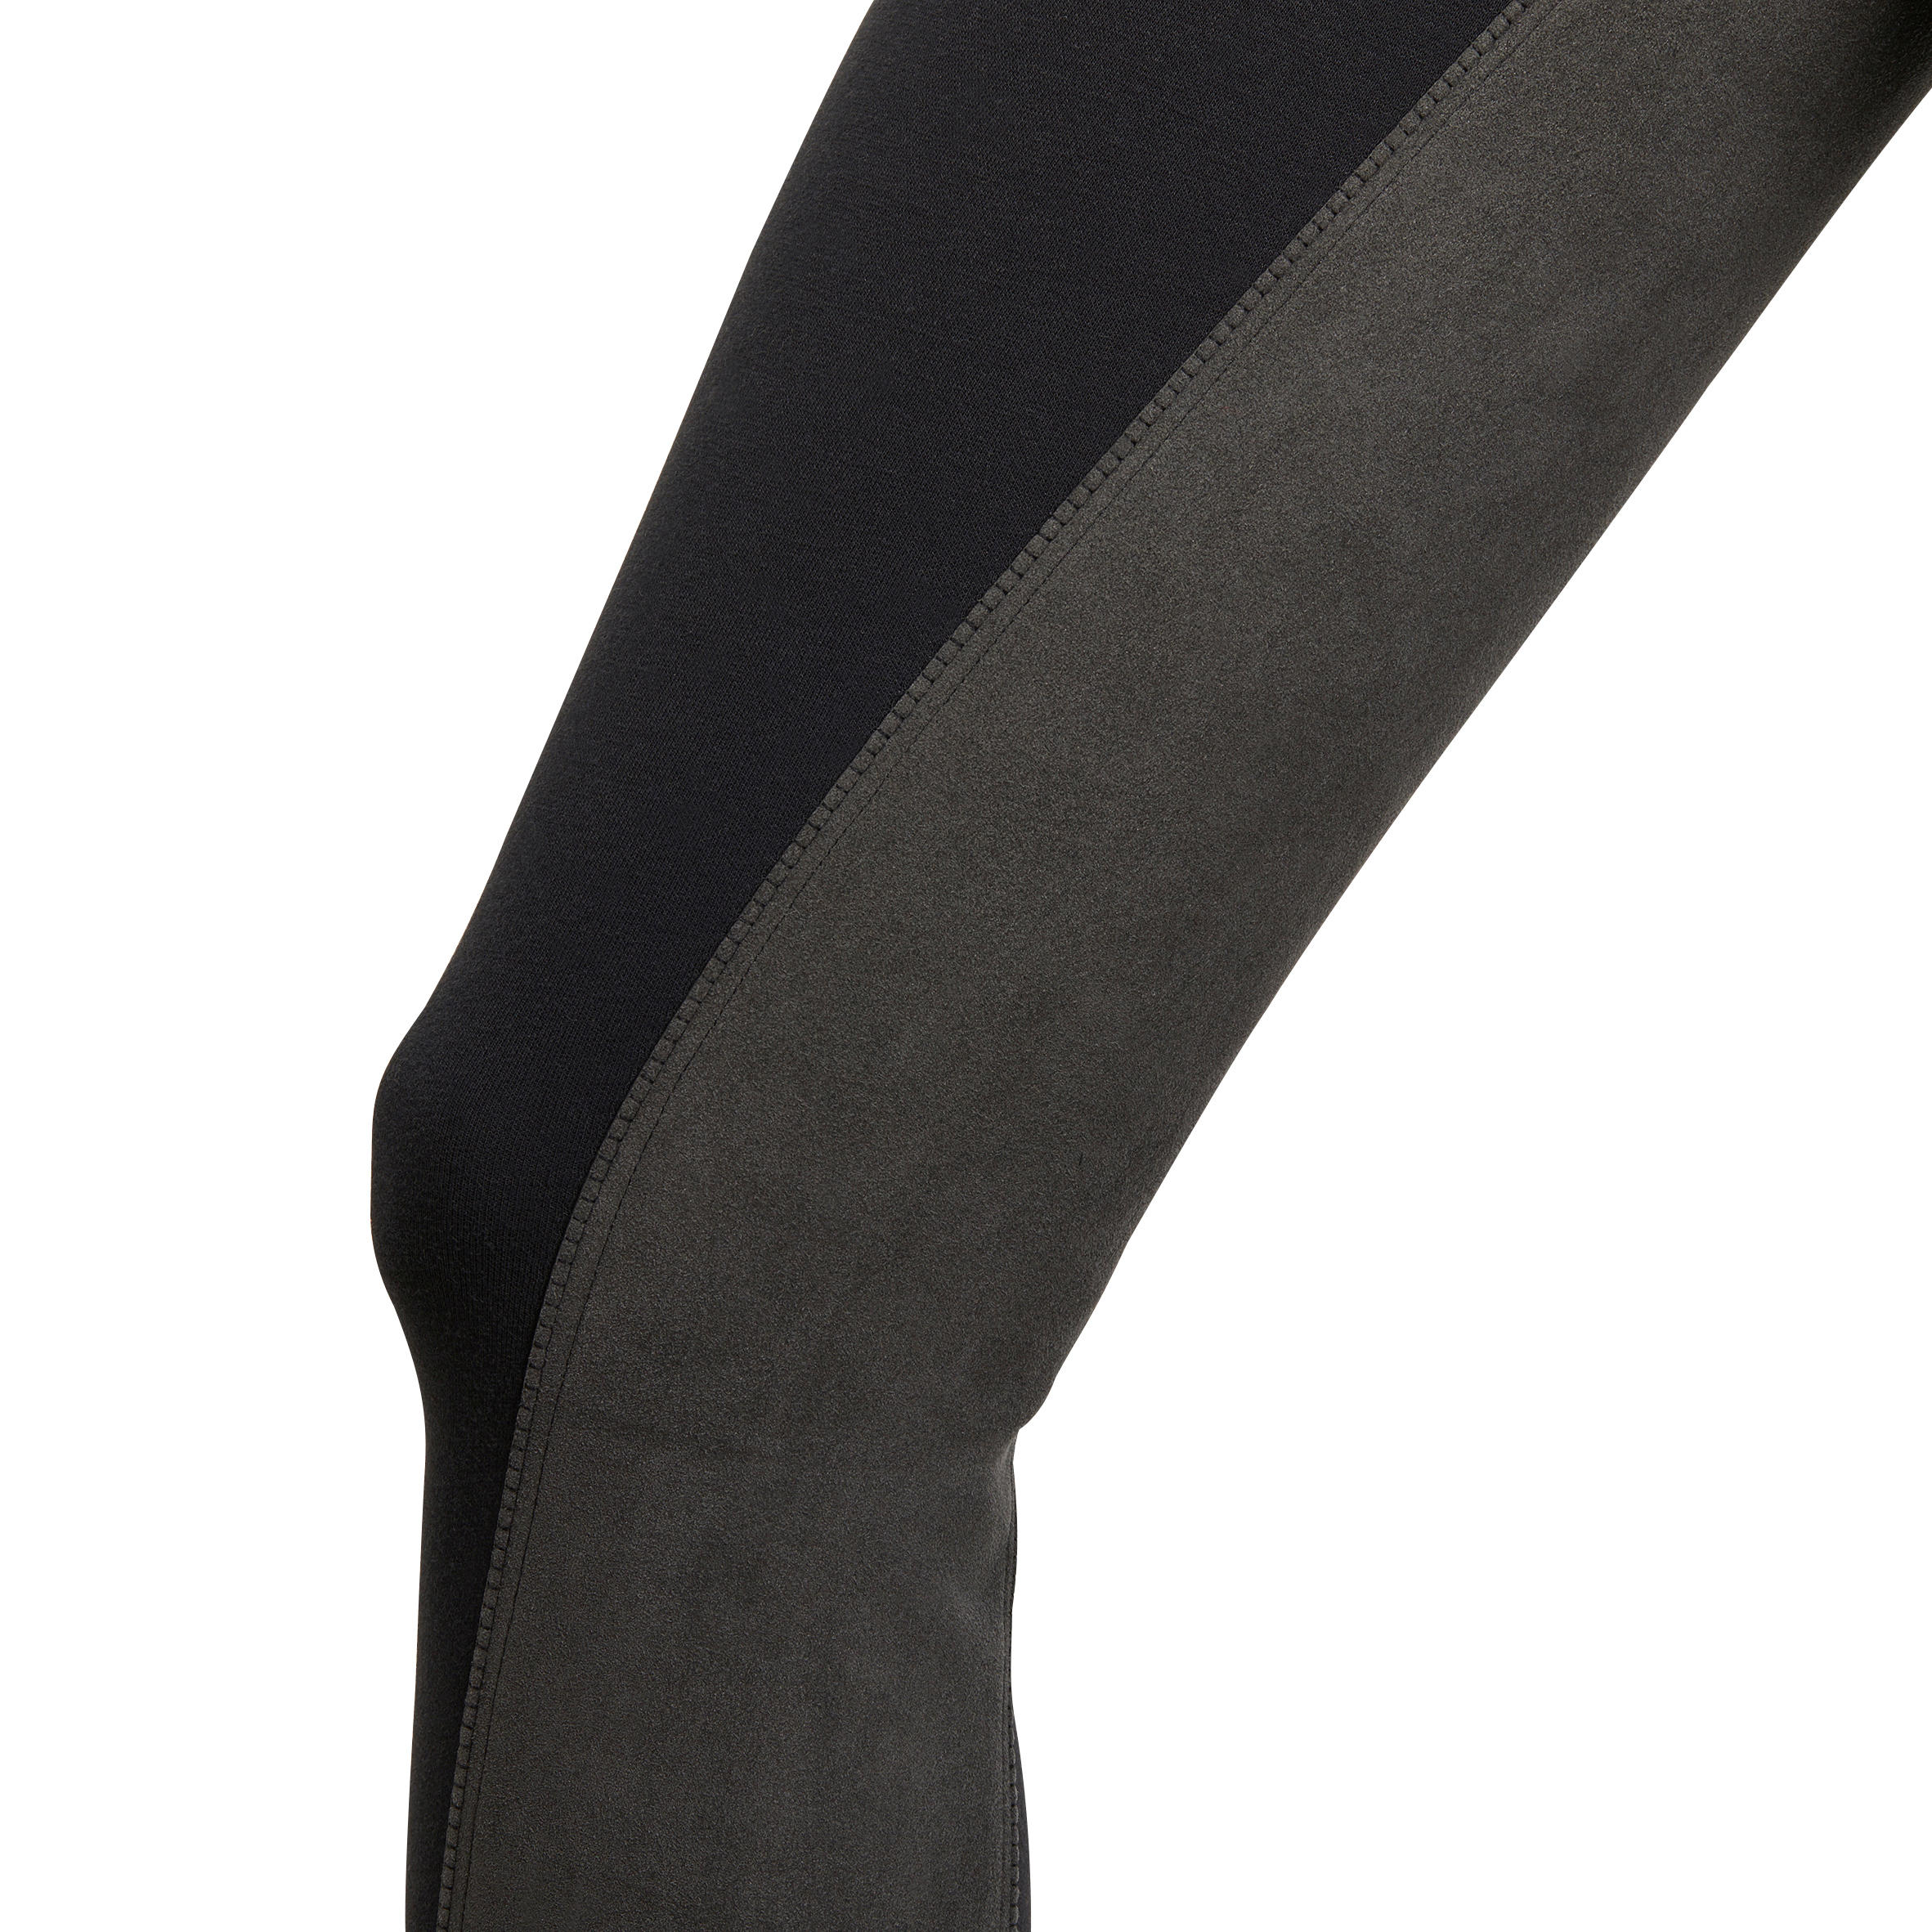 Pantalon fond de peau équitation femme 180 FULLSEAT noir - FOUGANZA